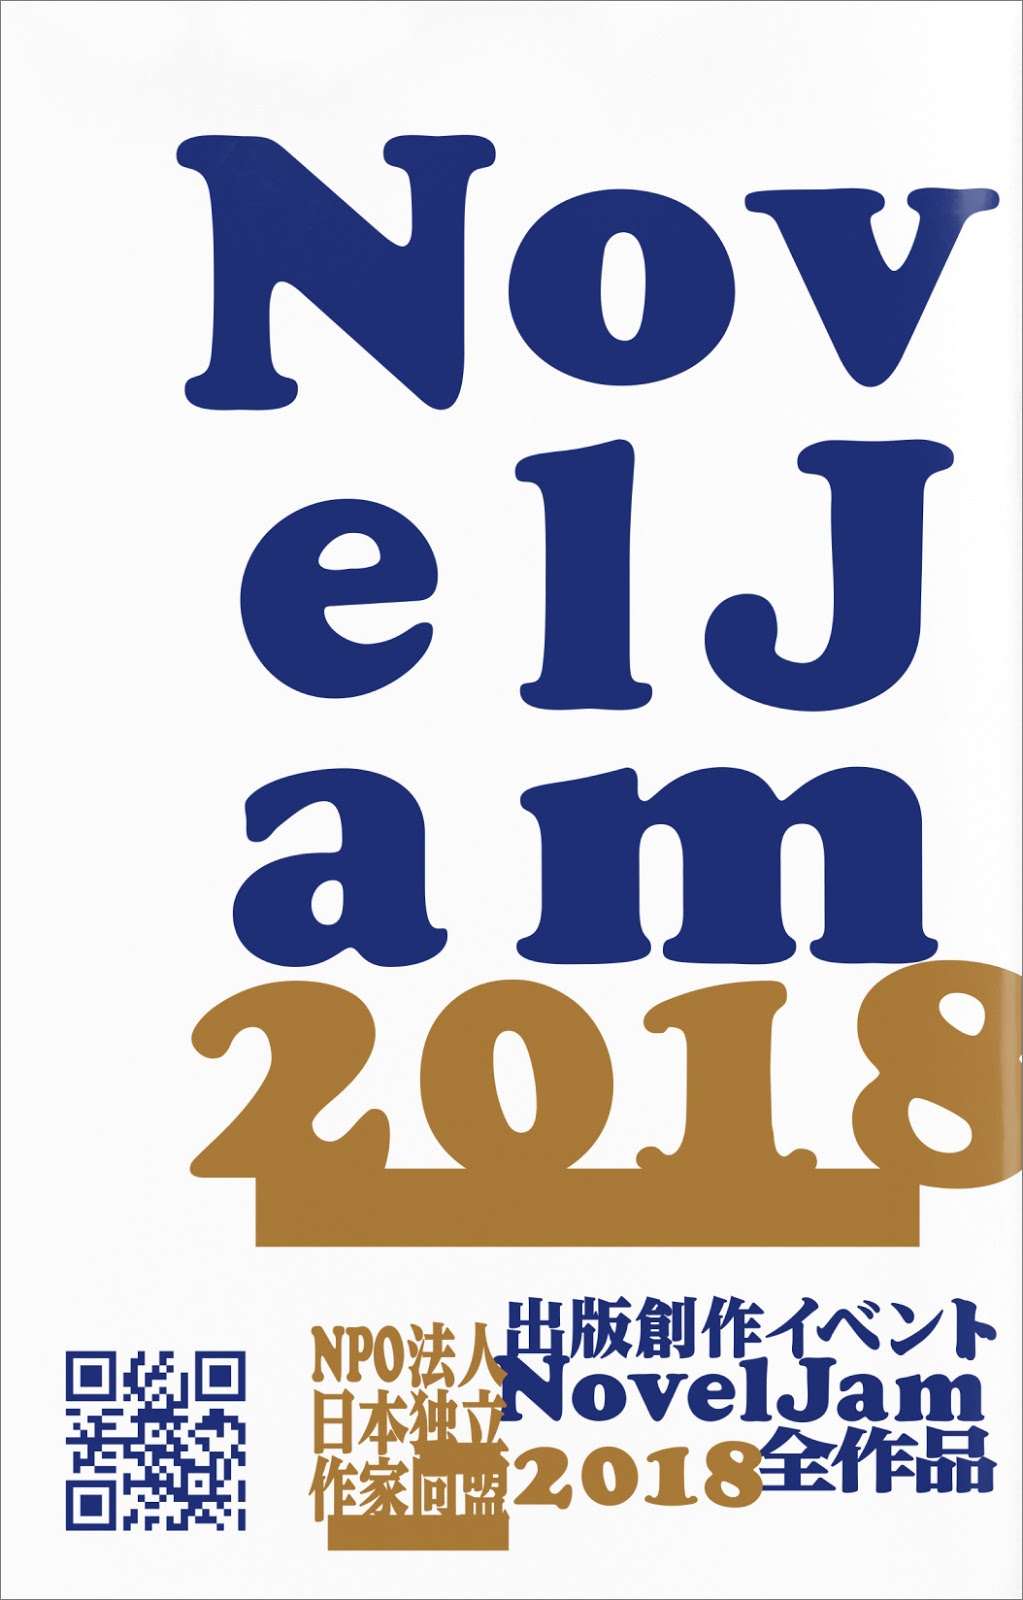 『出版創作イベント「NovelJam 2018」全作品』